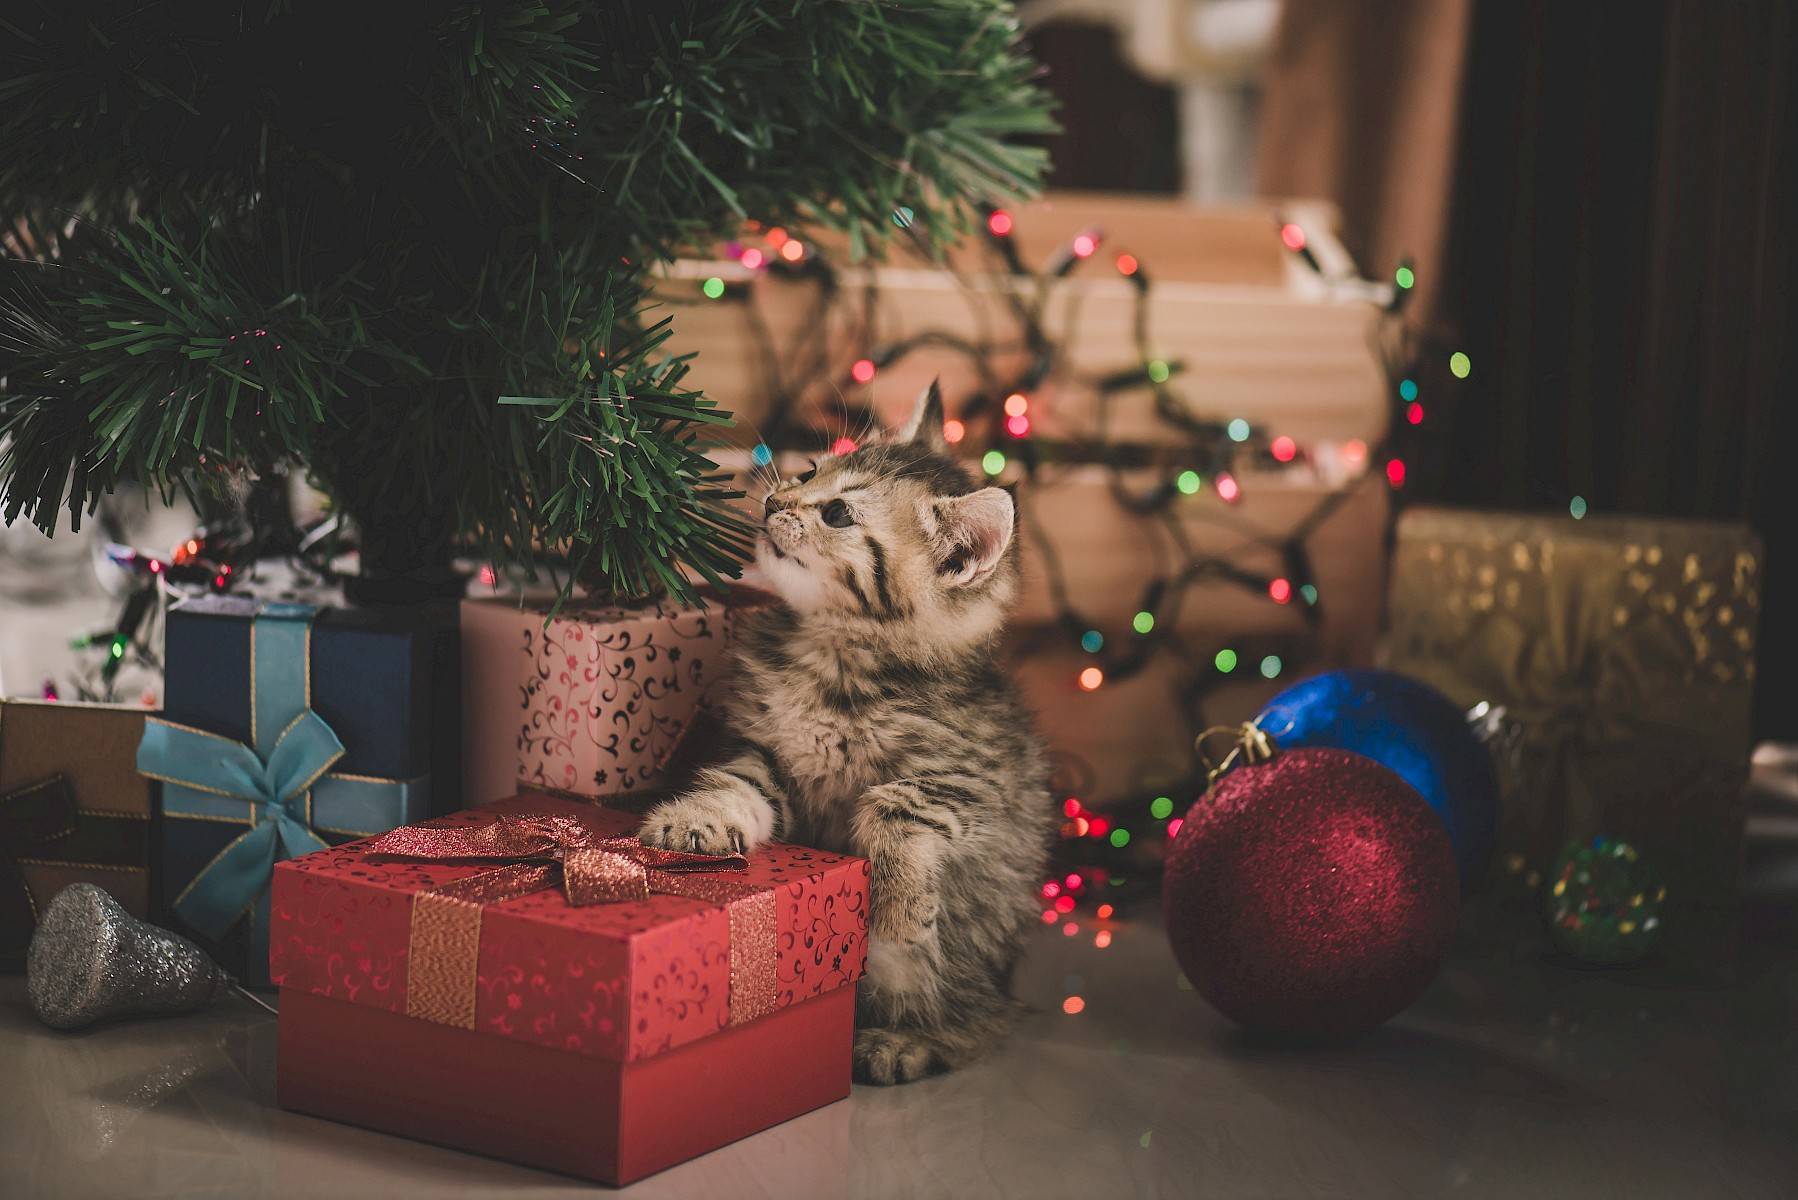 kitten tussen pakjes onder kerstboom met kerstlichtjes en versiering